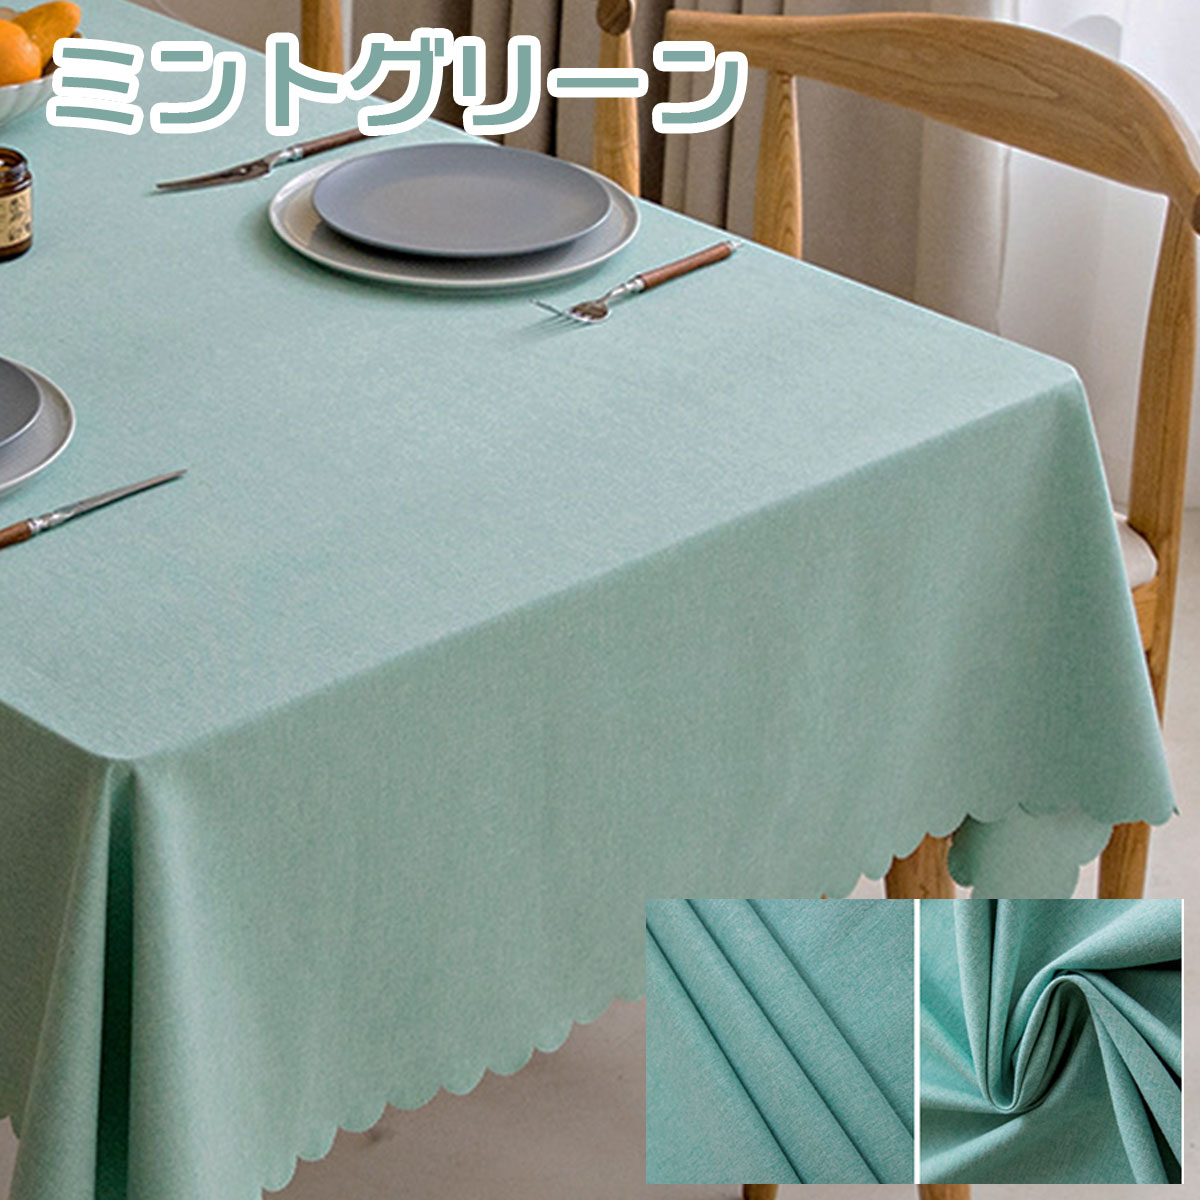 テーブルクロス テーブルカバー 正方形 スクエア 北欧風 綿麻 おしゃれ シンプル ナチュラル 洗える 布 クロスマット テーブルマット